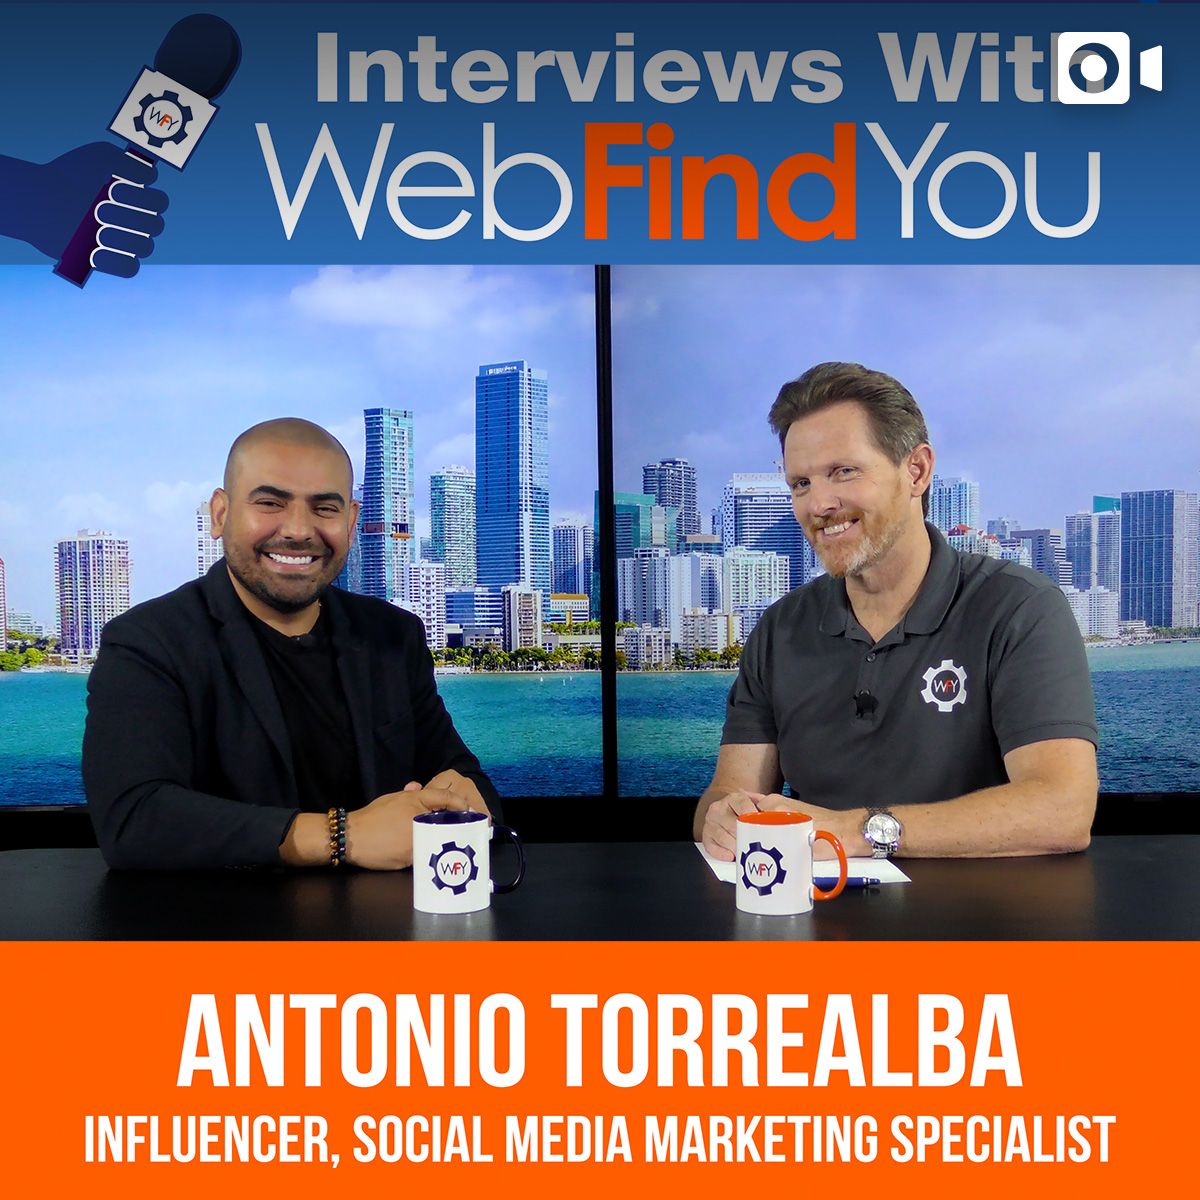 Antonio Torrealba's Interview